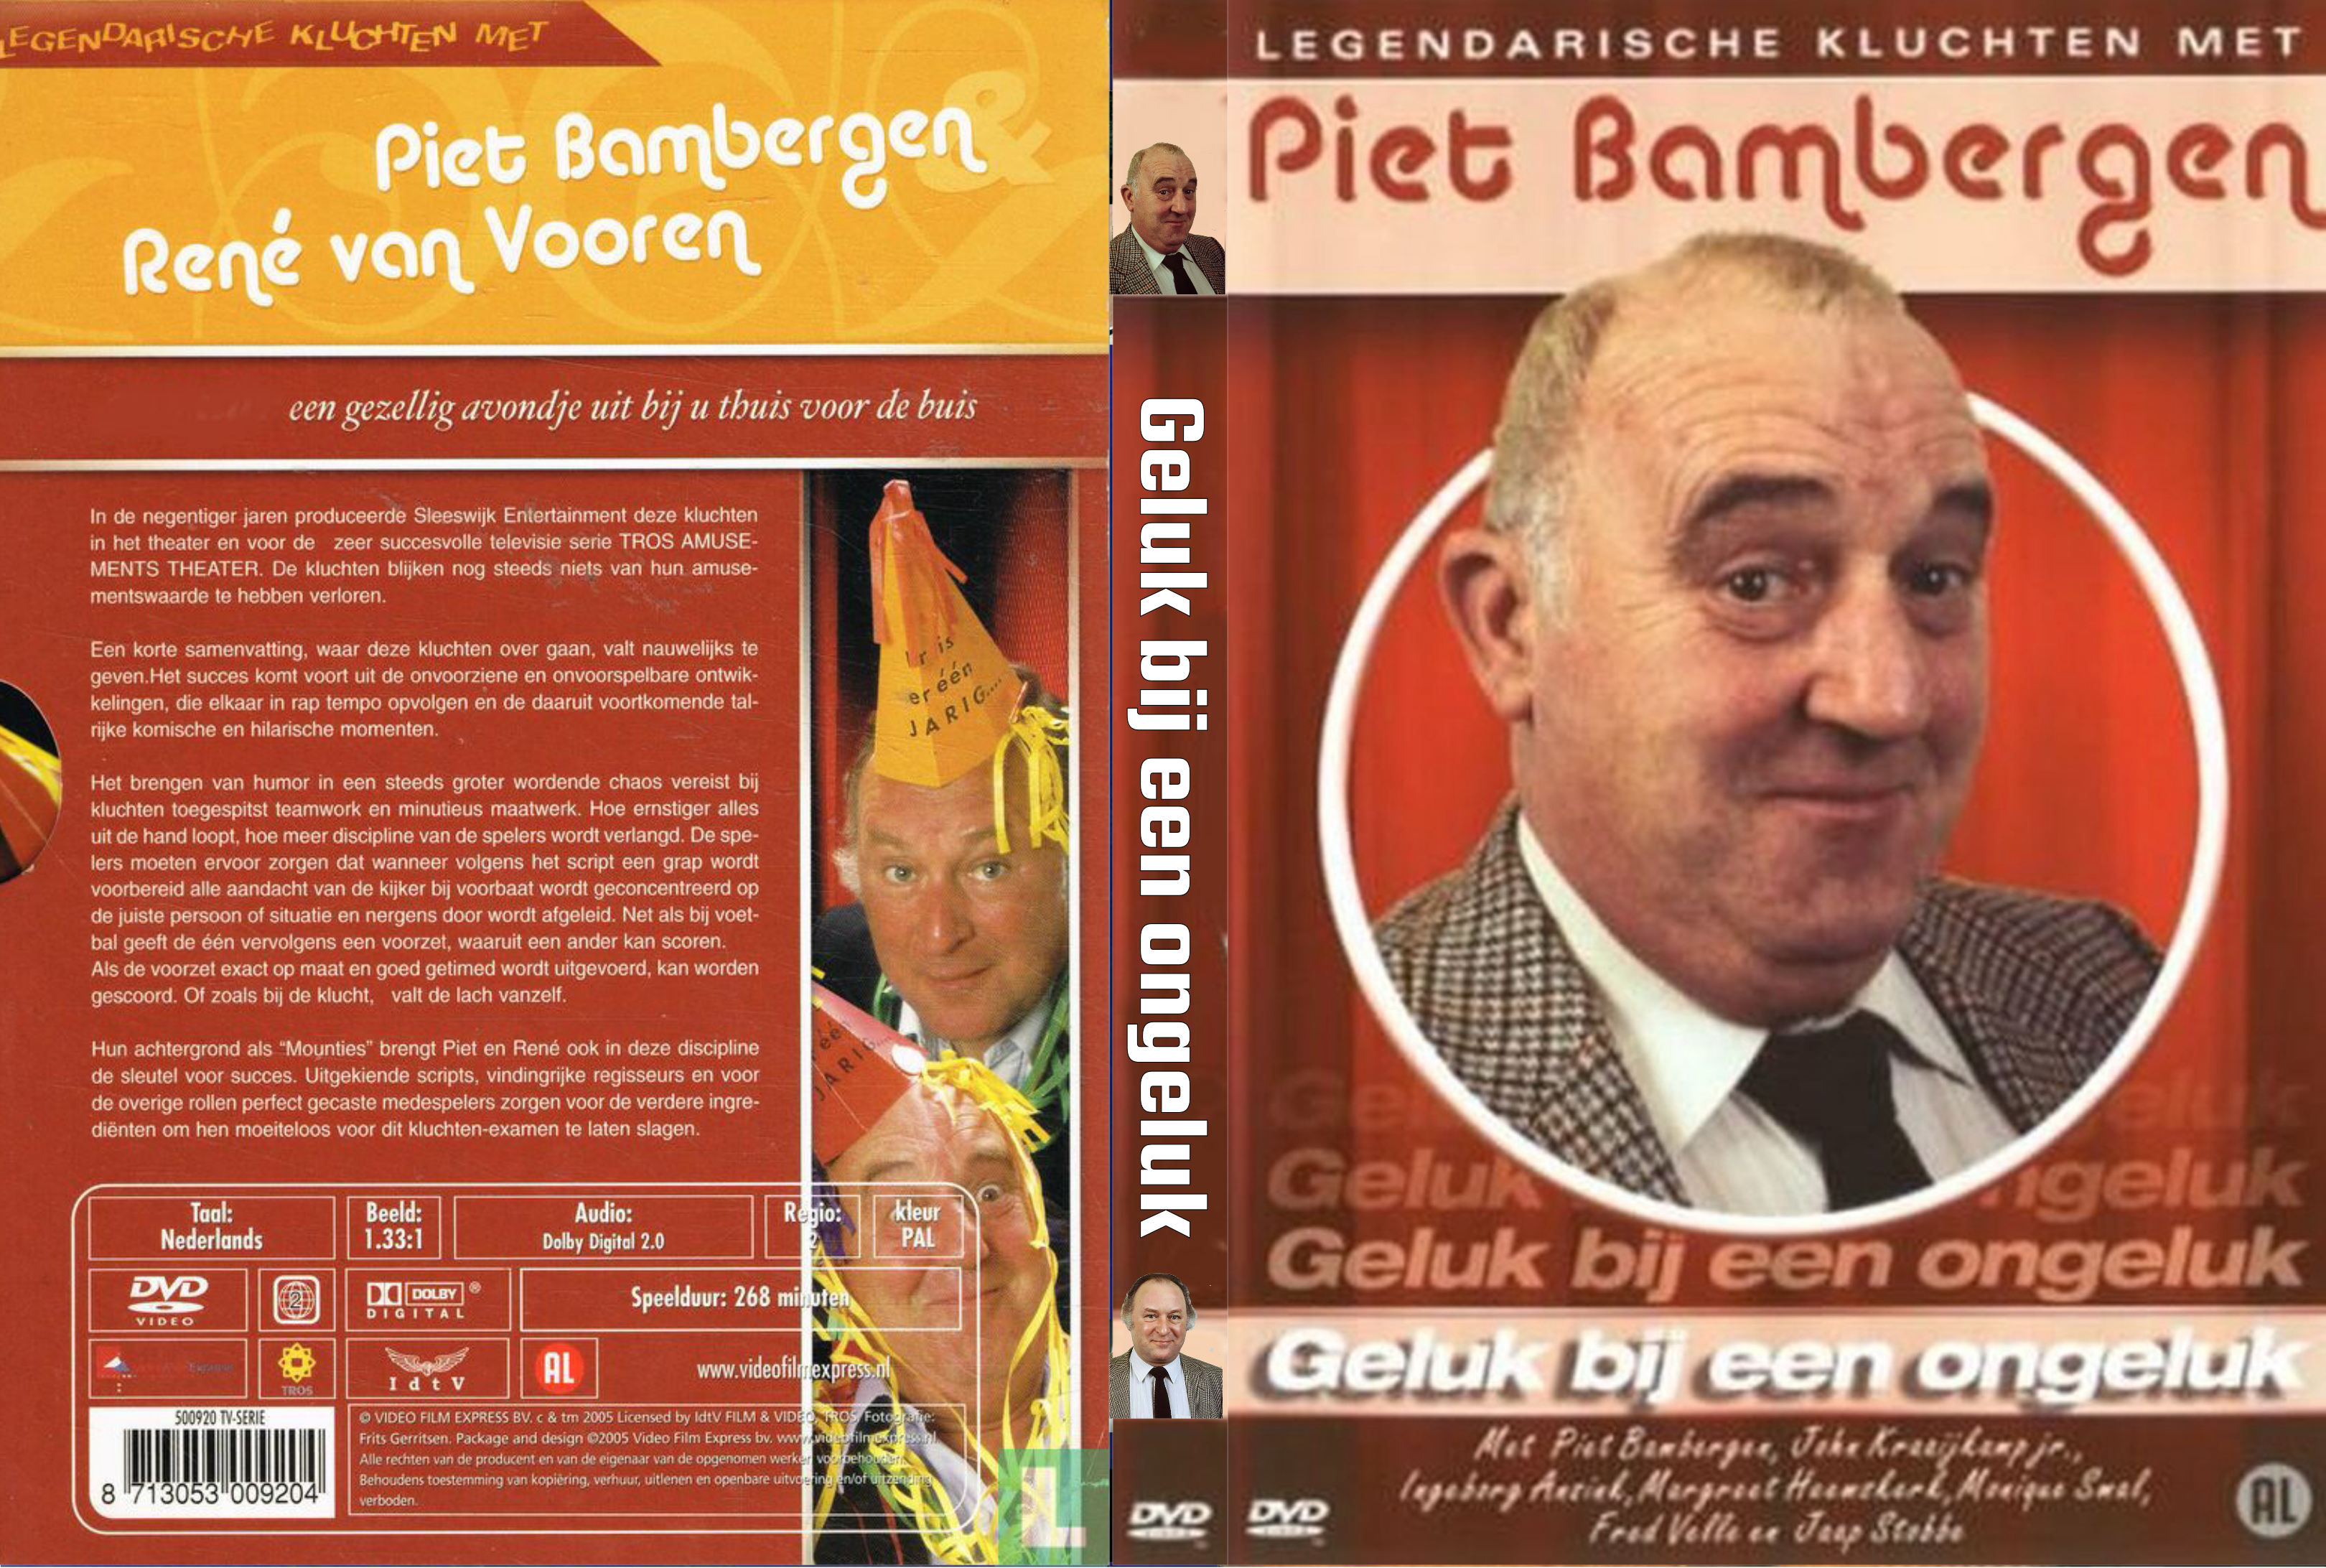 Piet Bambergen - Geluk bij een ongeluk (1990)